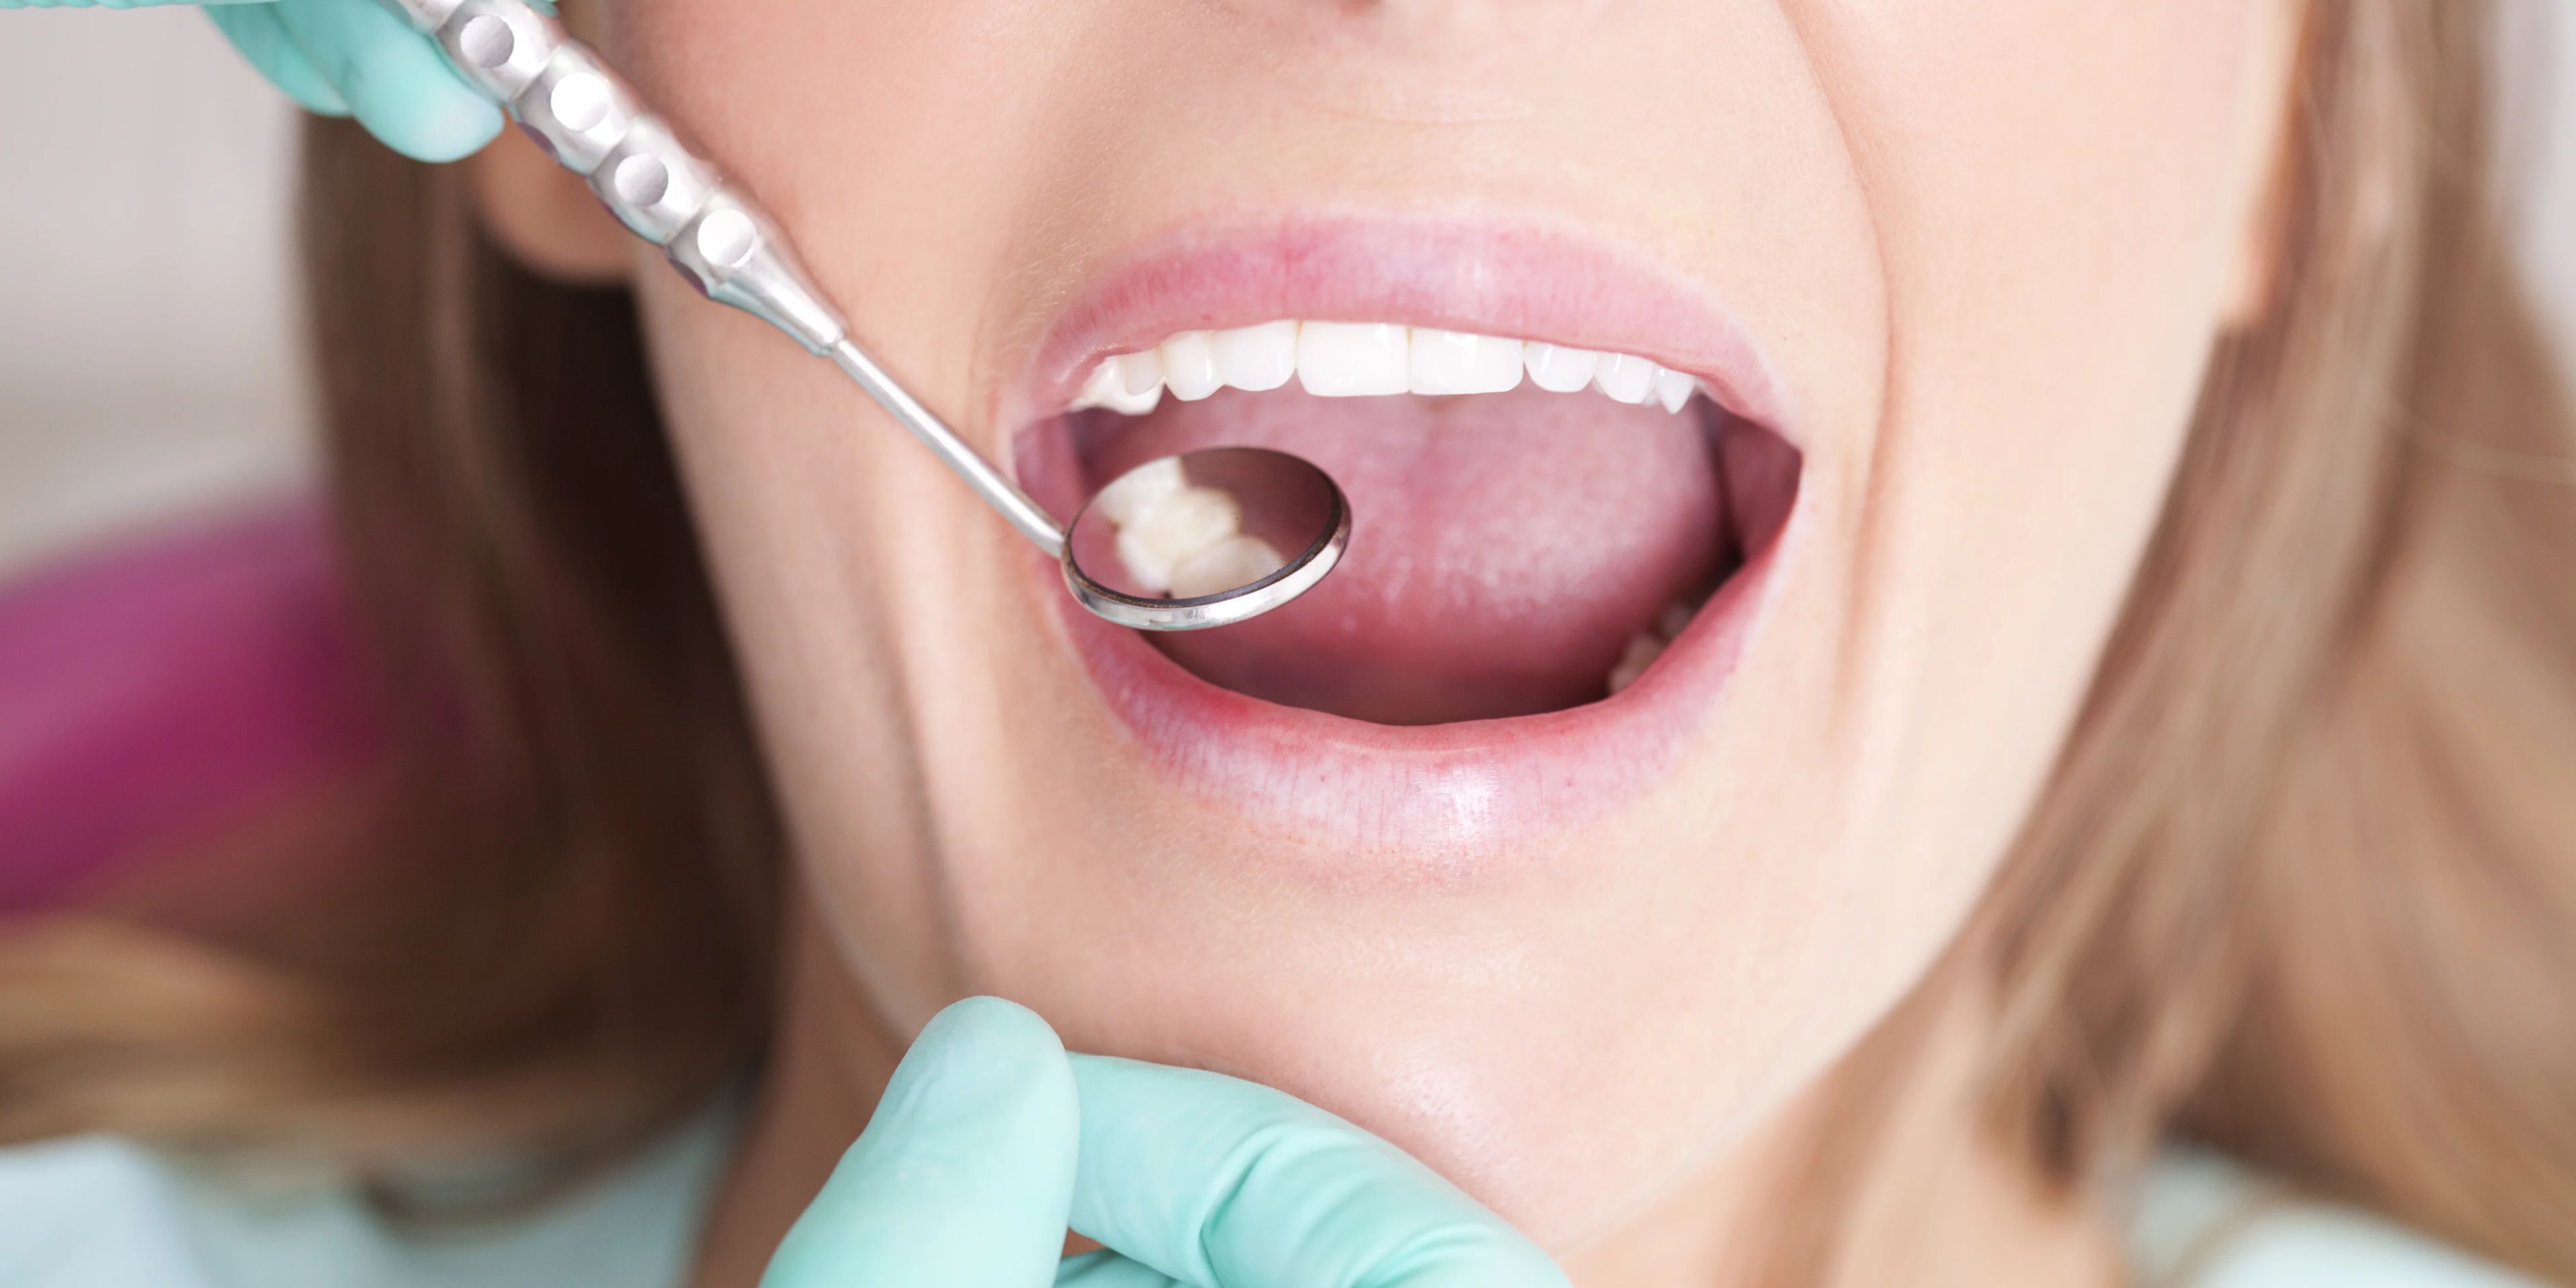 Tannlegen sjekker tennene til en pasient